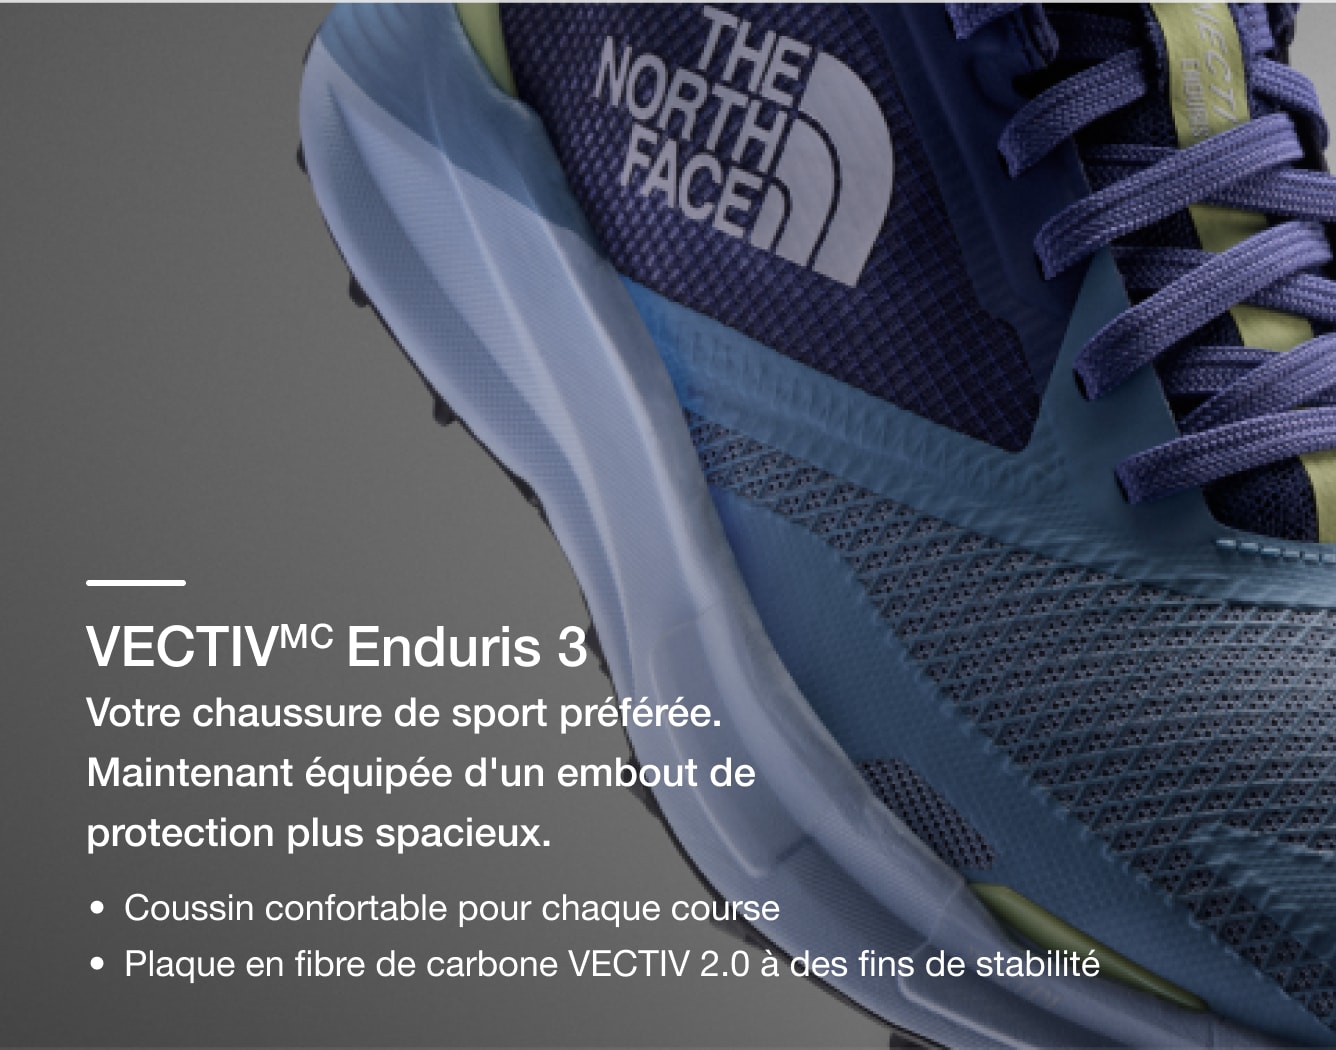 Photo studio de la chaussure de course sur sentier VECTIV Enduris de The North Face avec ses caractéristiques en superposition de texte.